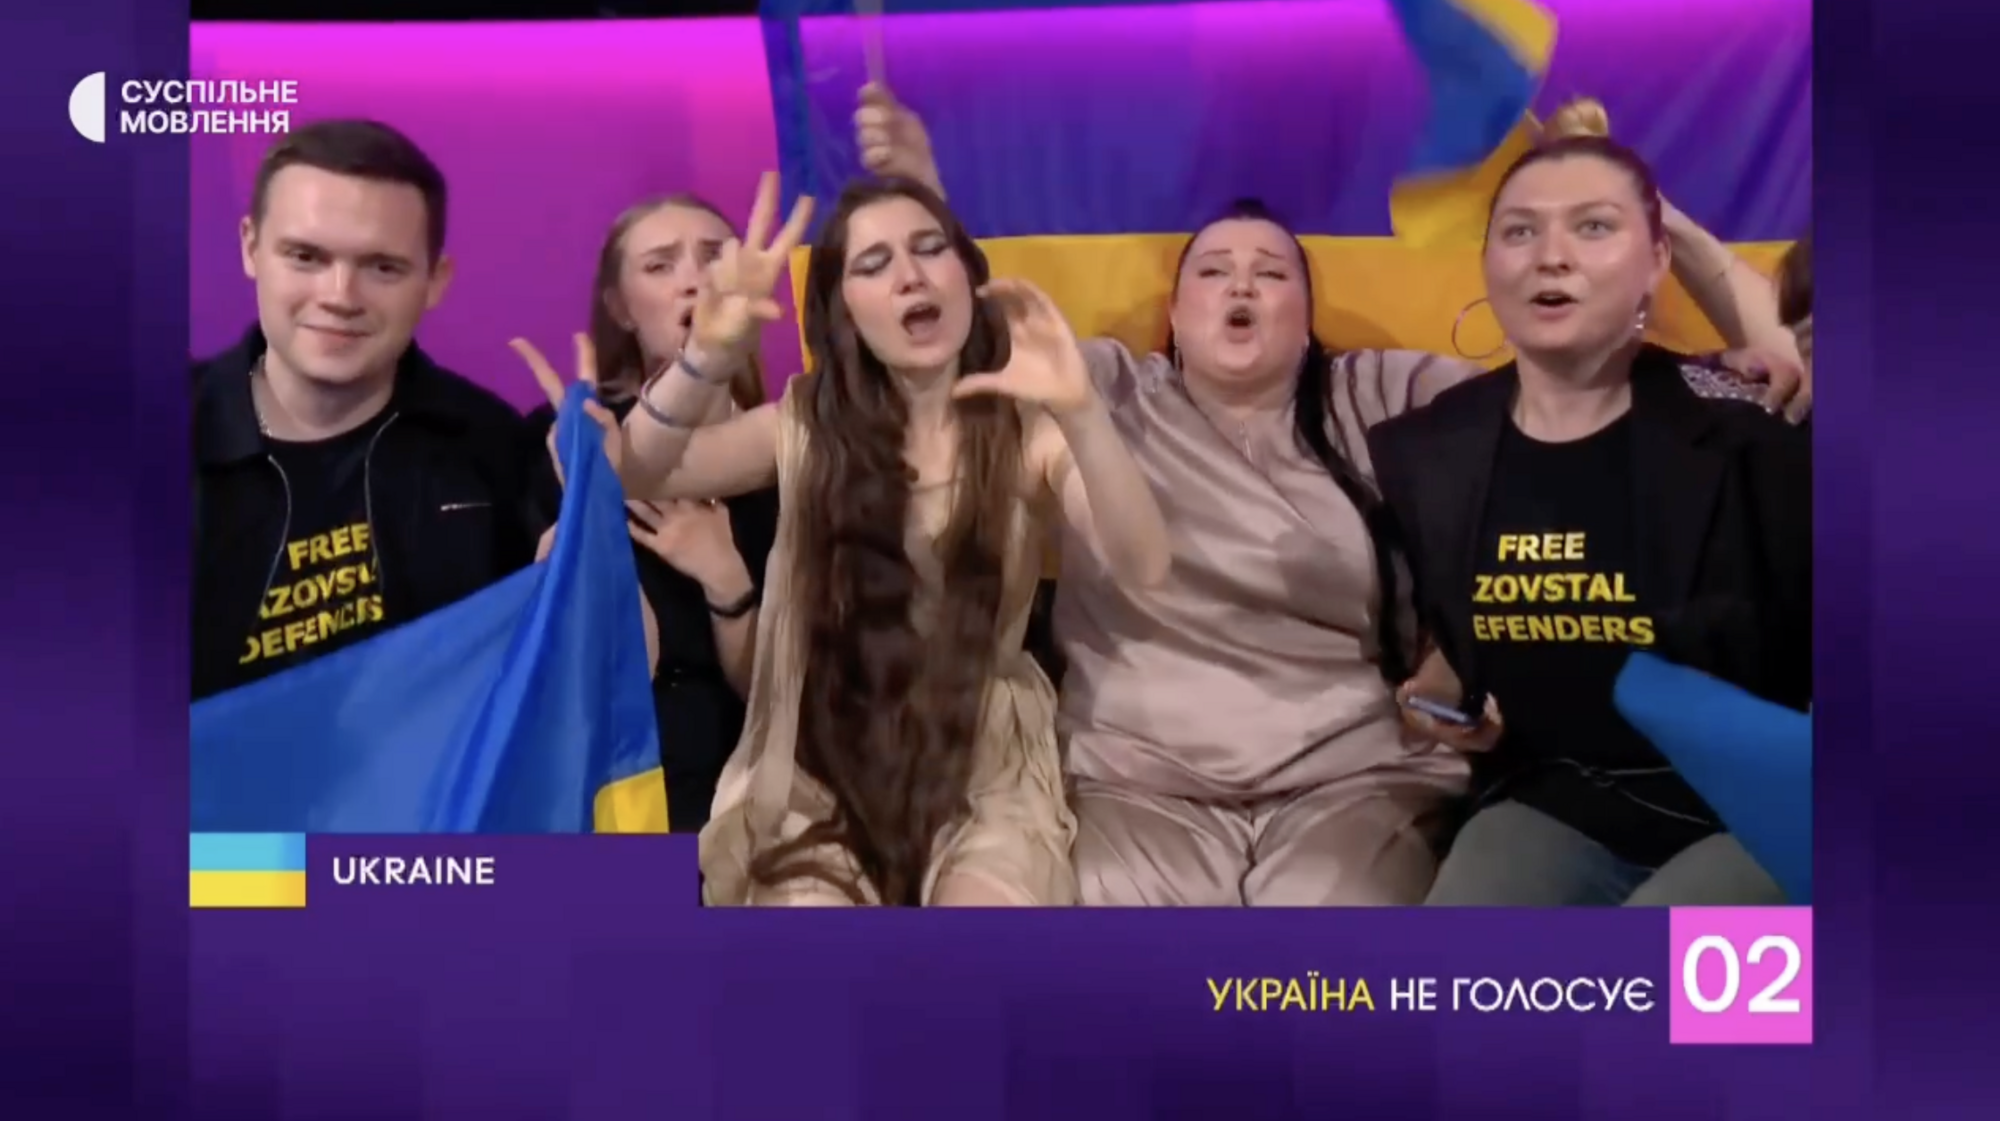 "Номера смерті" не існує! Як Україна зламала головний стереотип Євробачення та стала найвідданішою вболівальницею Швейцарії  